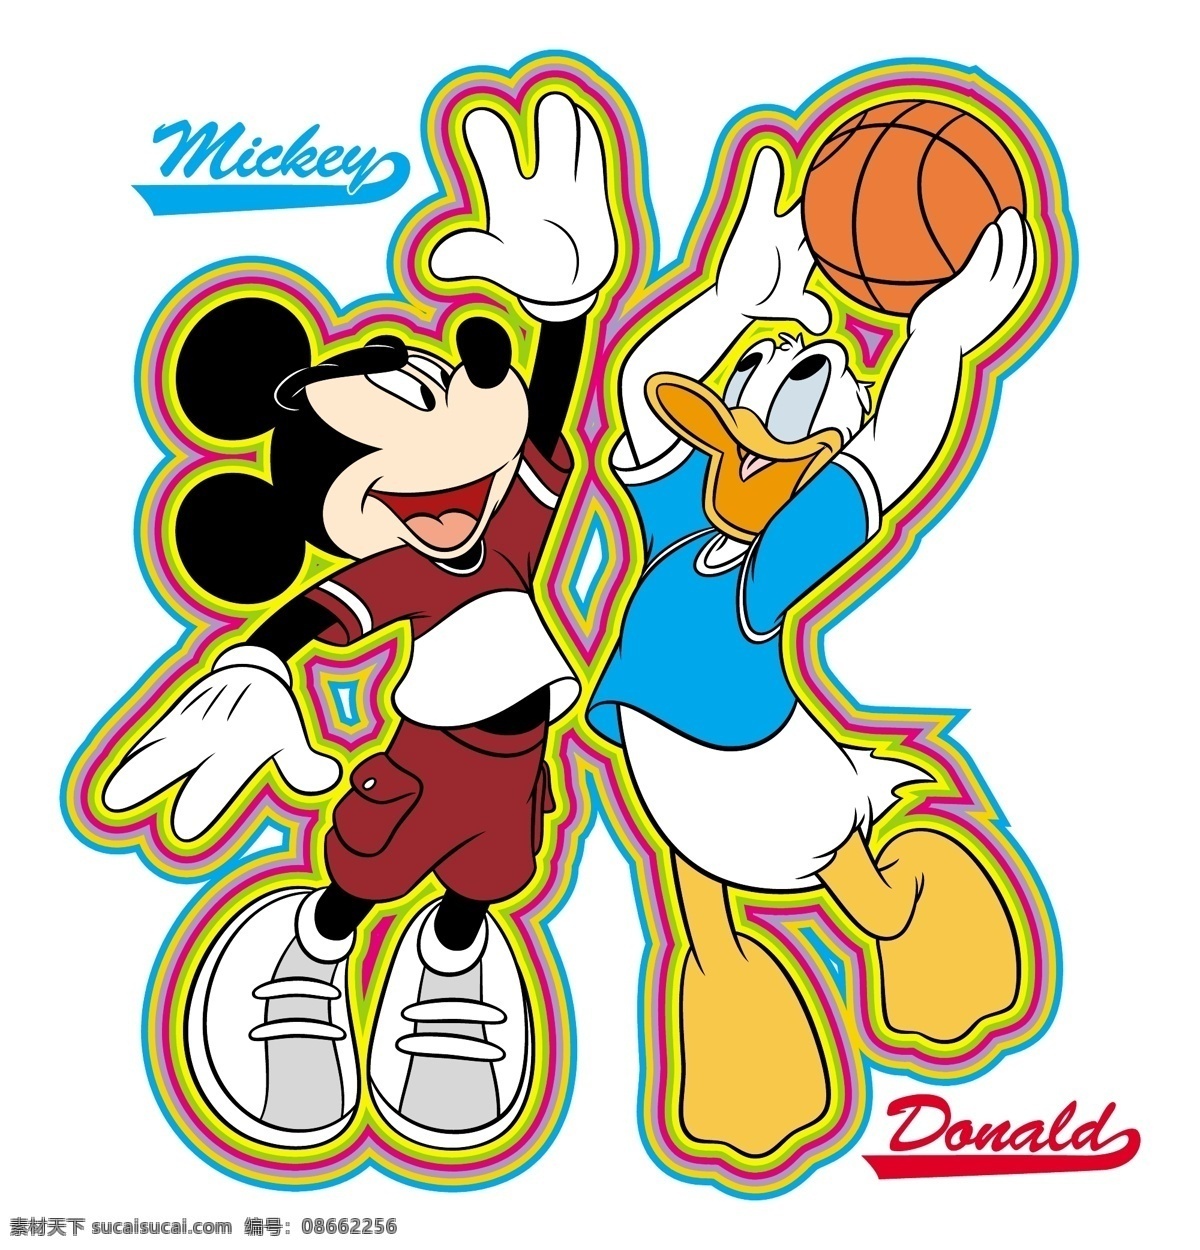 米奇 唐纳德 篮球 迪士尼 鼠标 的故事 矢量图 其他矢量图